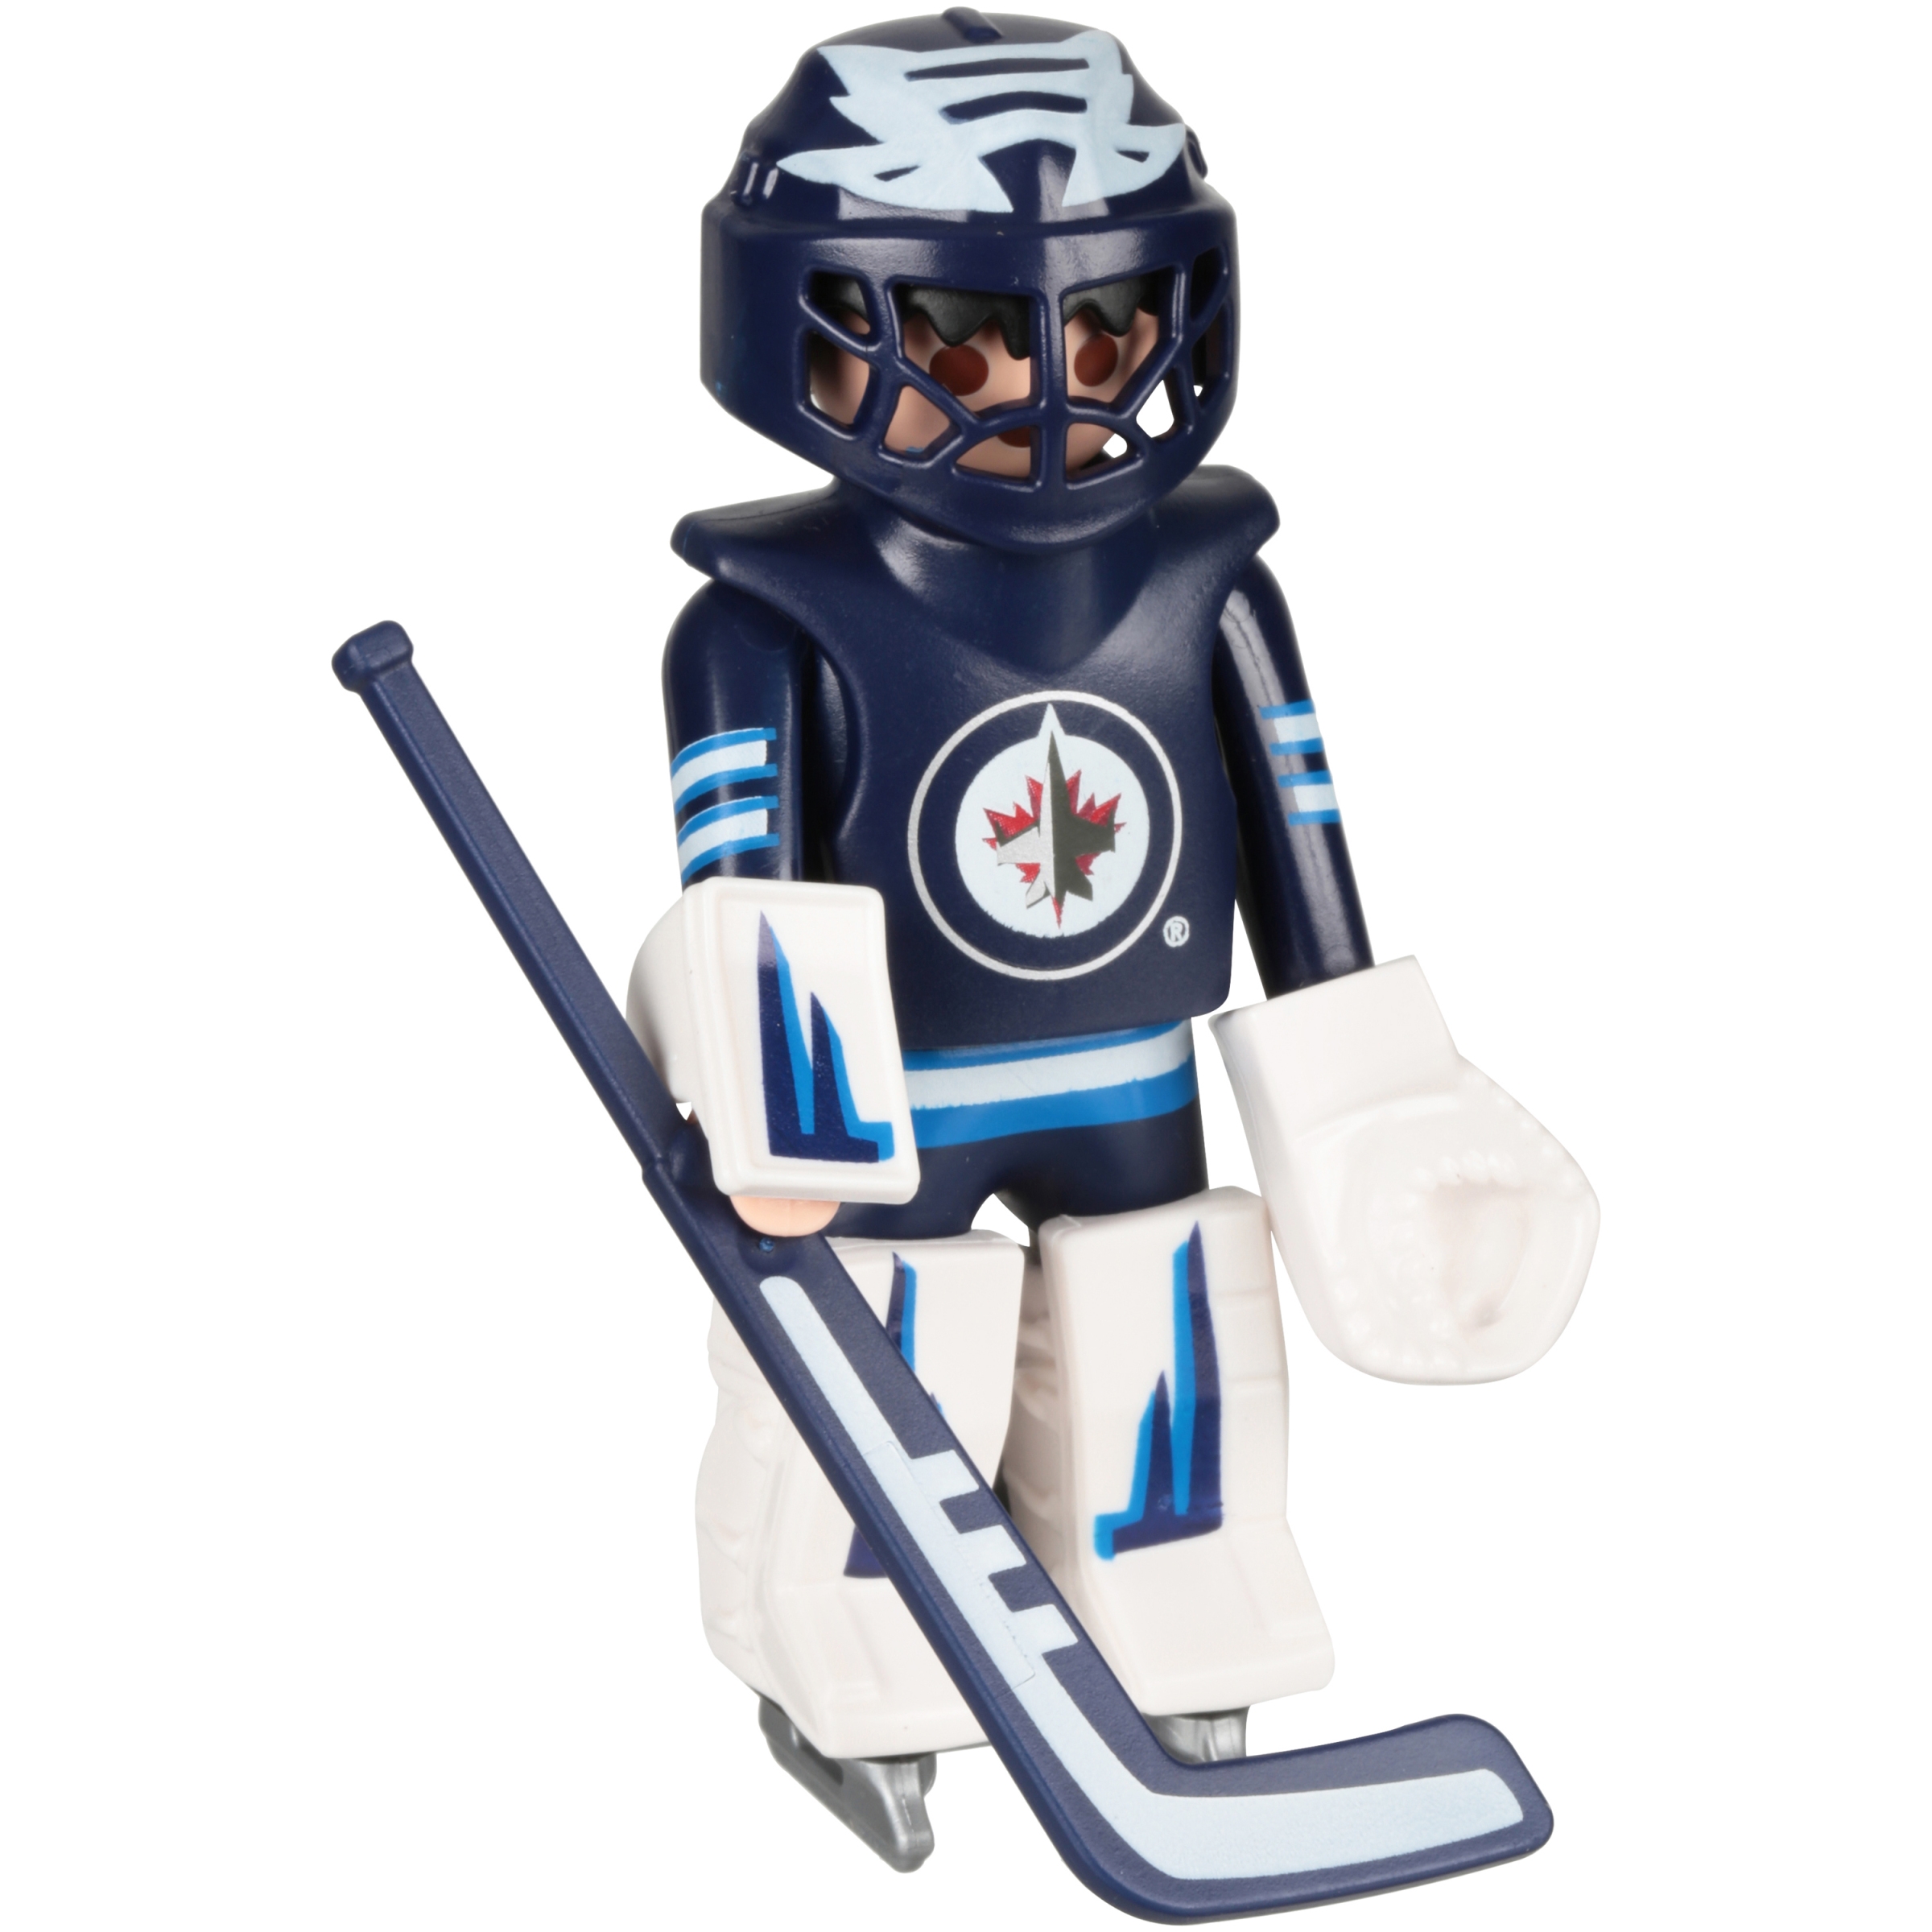 PLAYMOBIL NHL Winnipeg Jets Goalie Figure - image 1 of 3